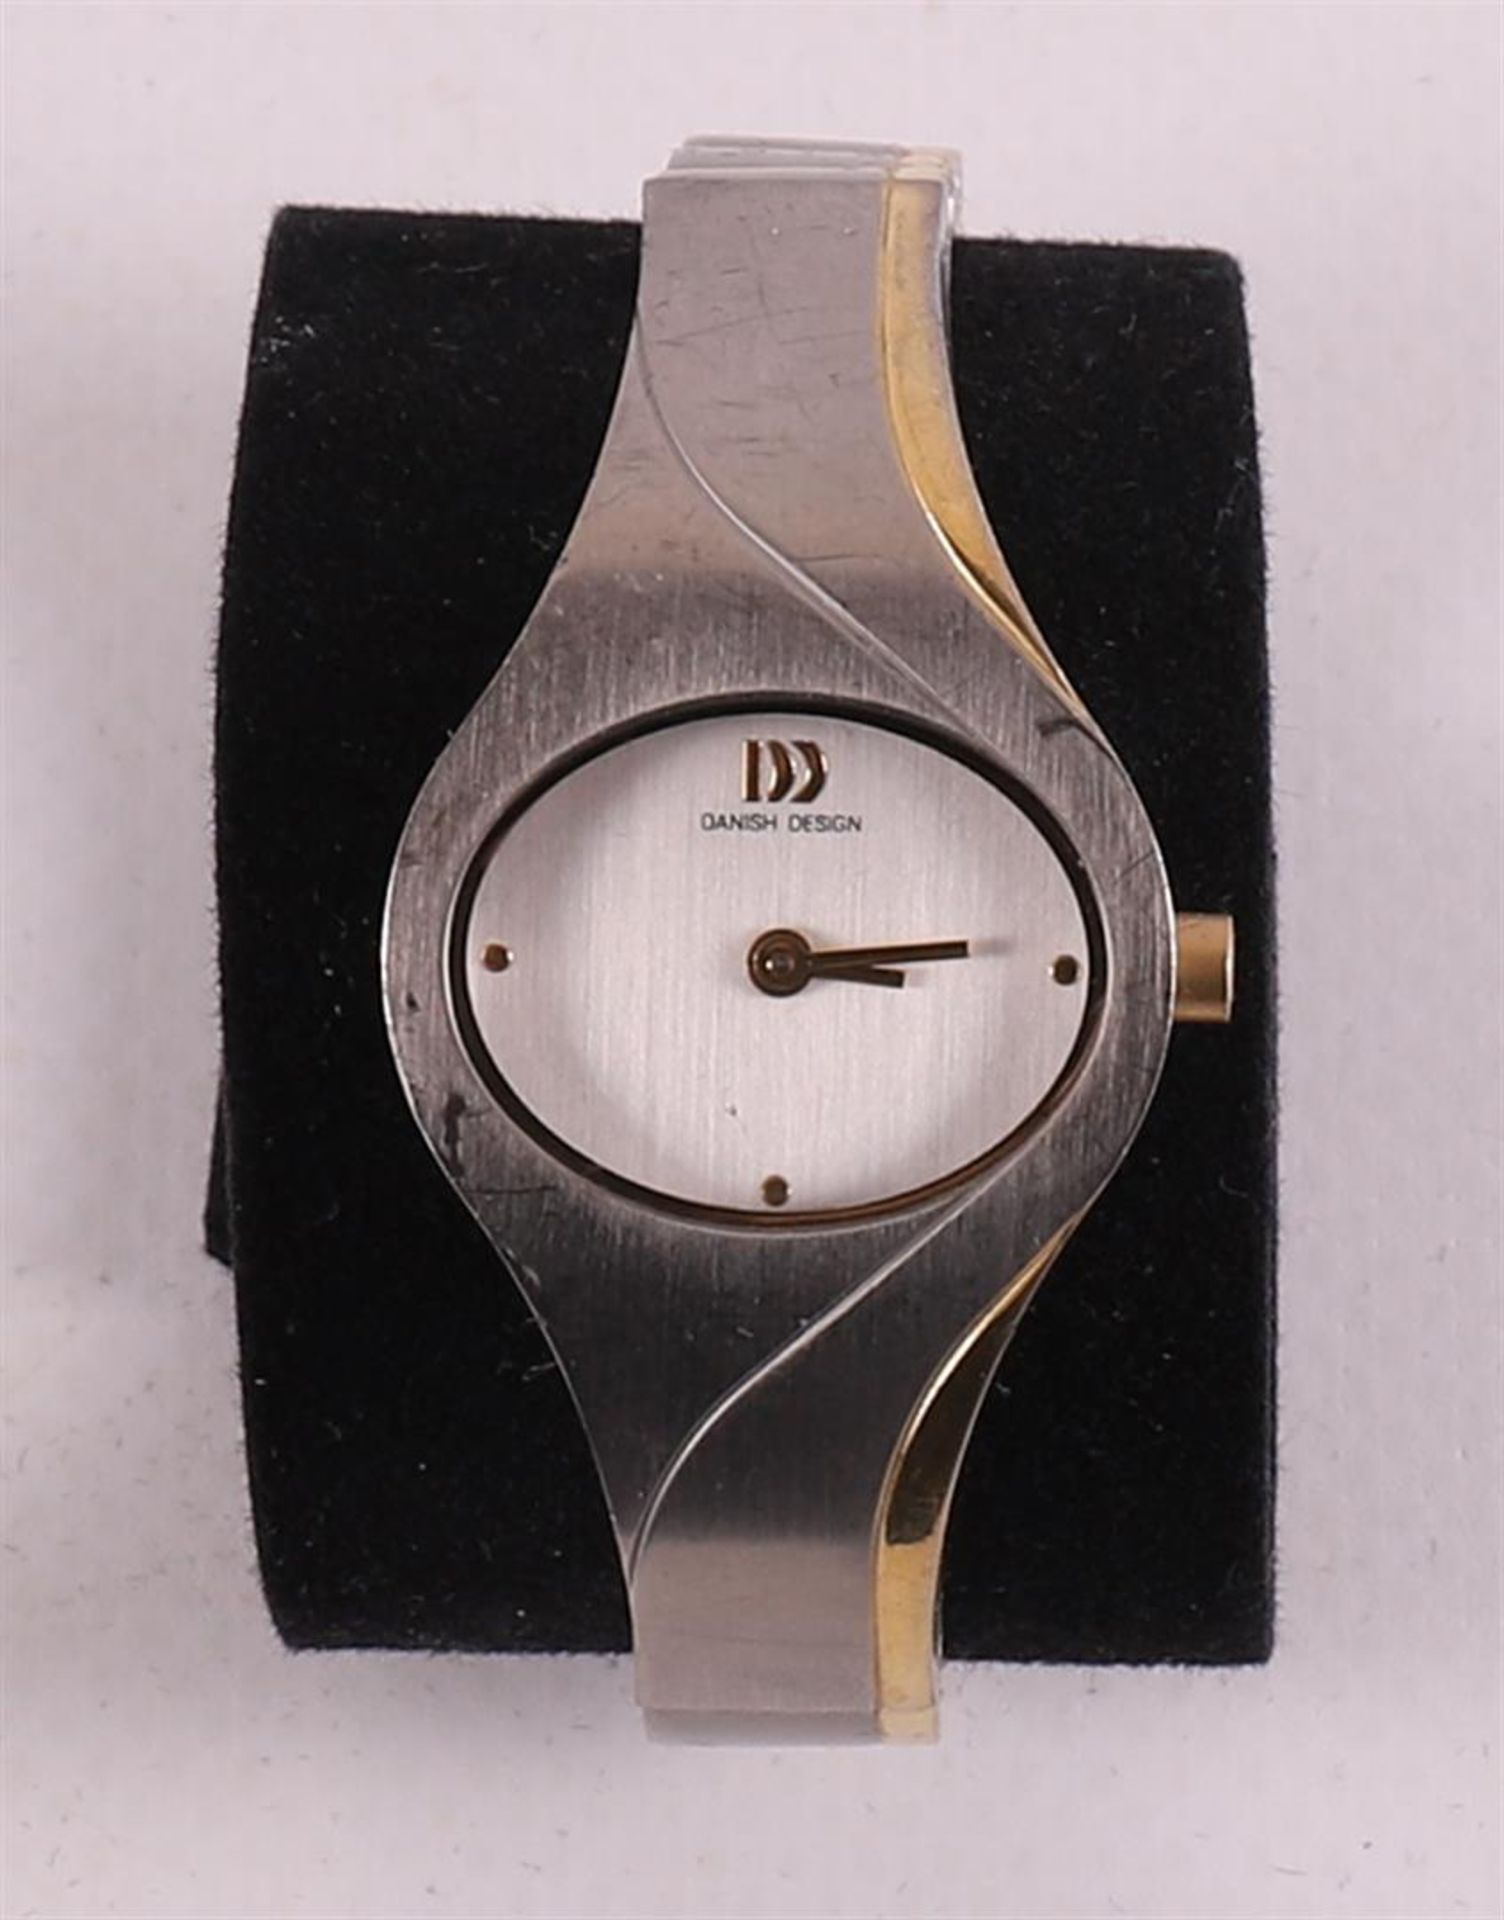 A stainless steel Danish Design women's wristwatch in original case. - Bild 4 aus 5